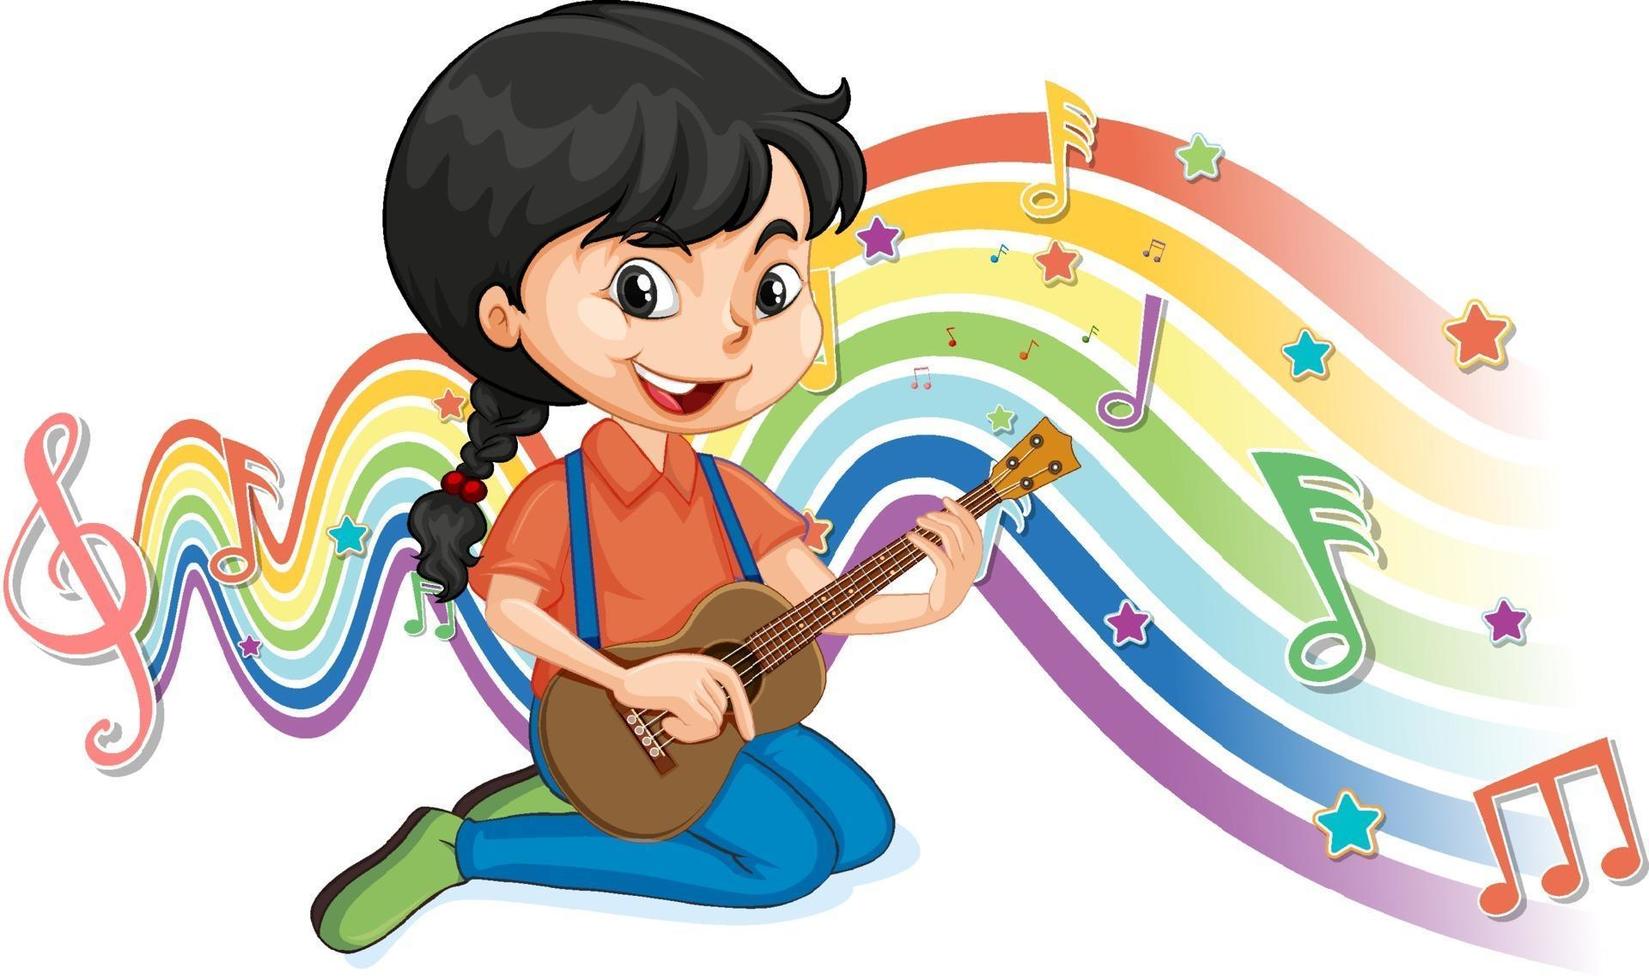 meisje dat gitaar speelt met melodiesymbolen op regenbooggolf vector